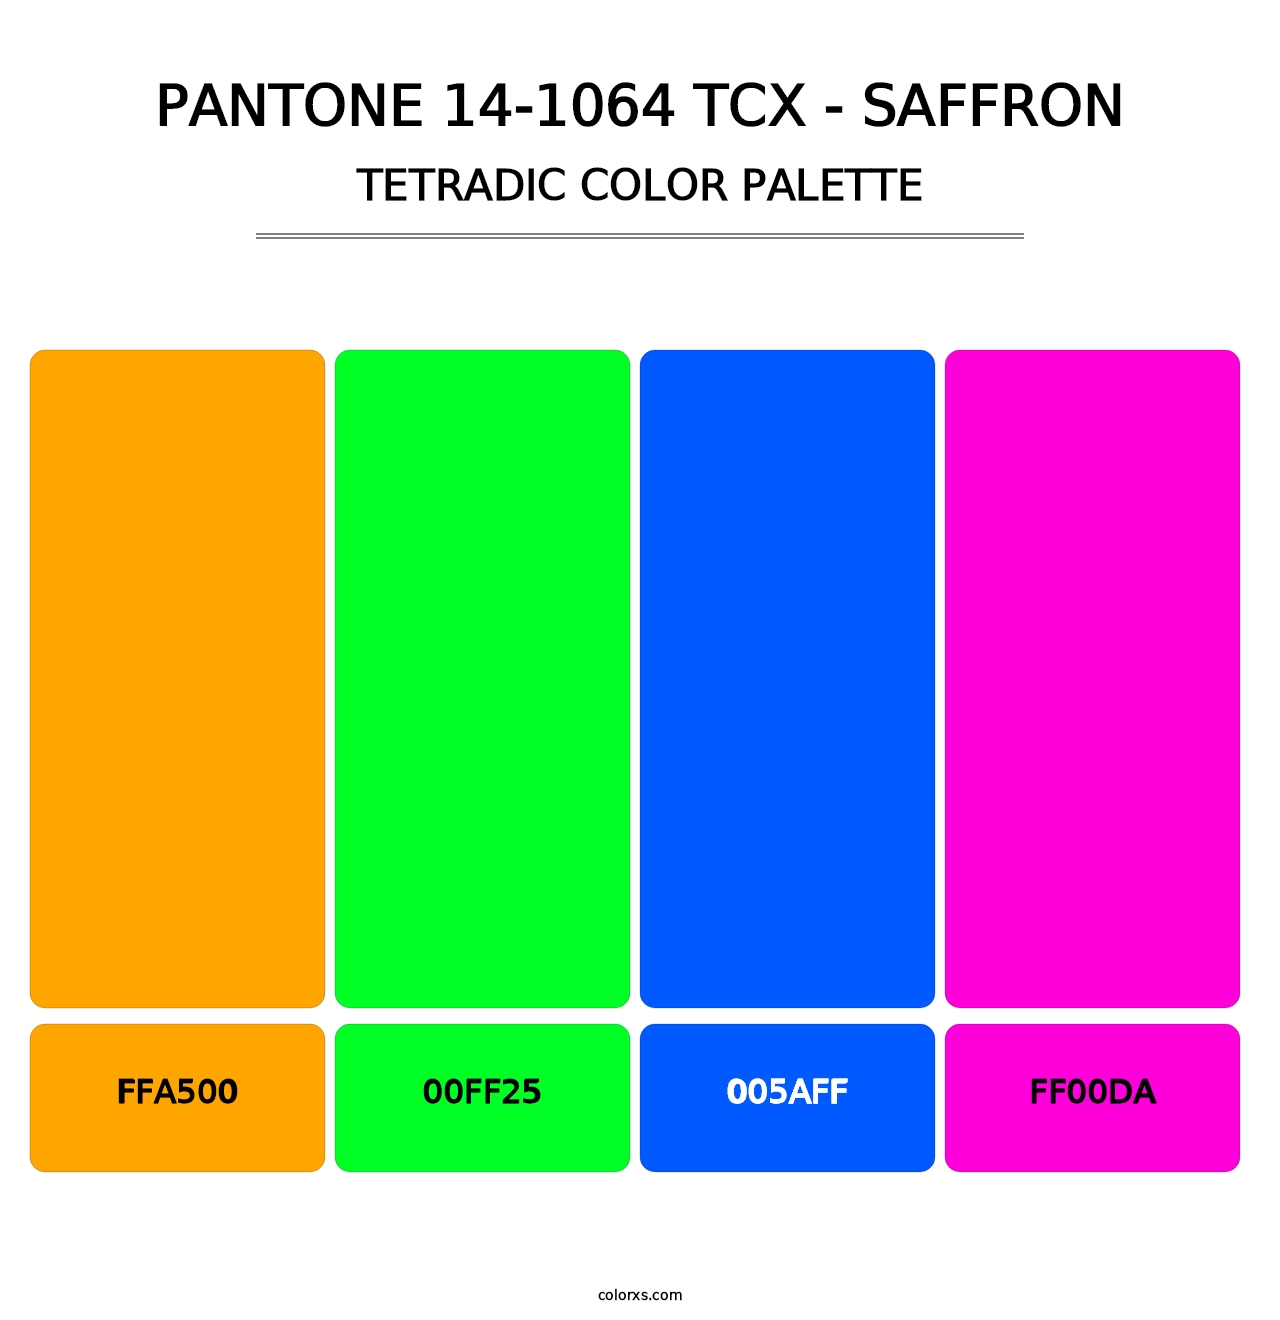 PANTONE 14-1064 TCX - Saffron - Tetradic Color Palette